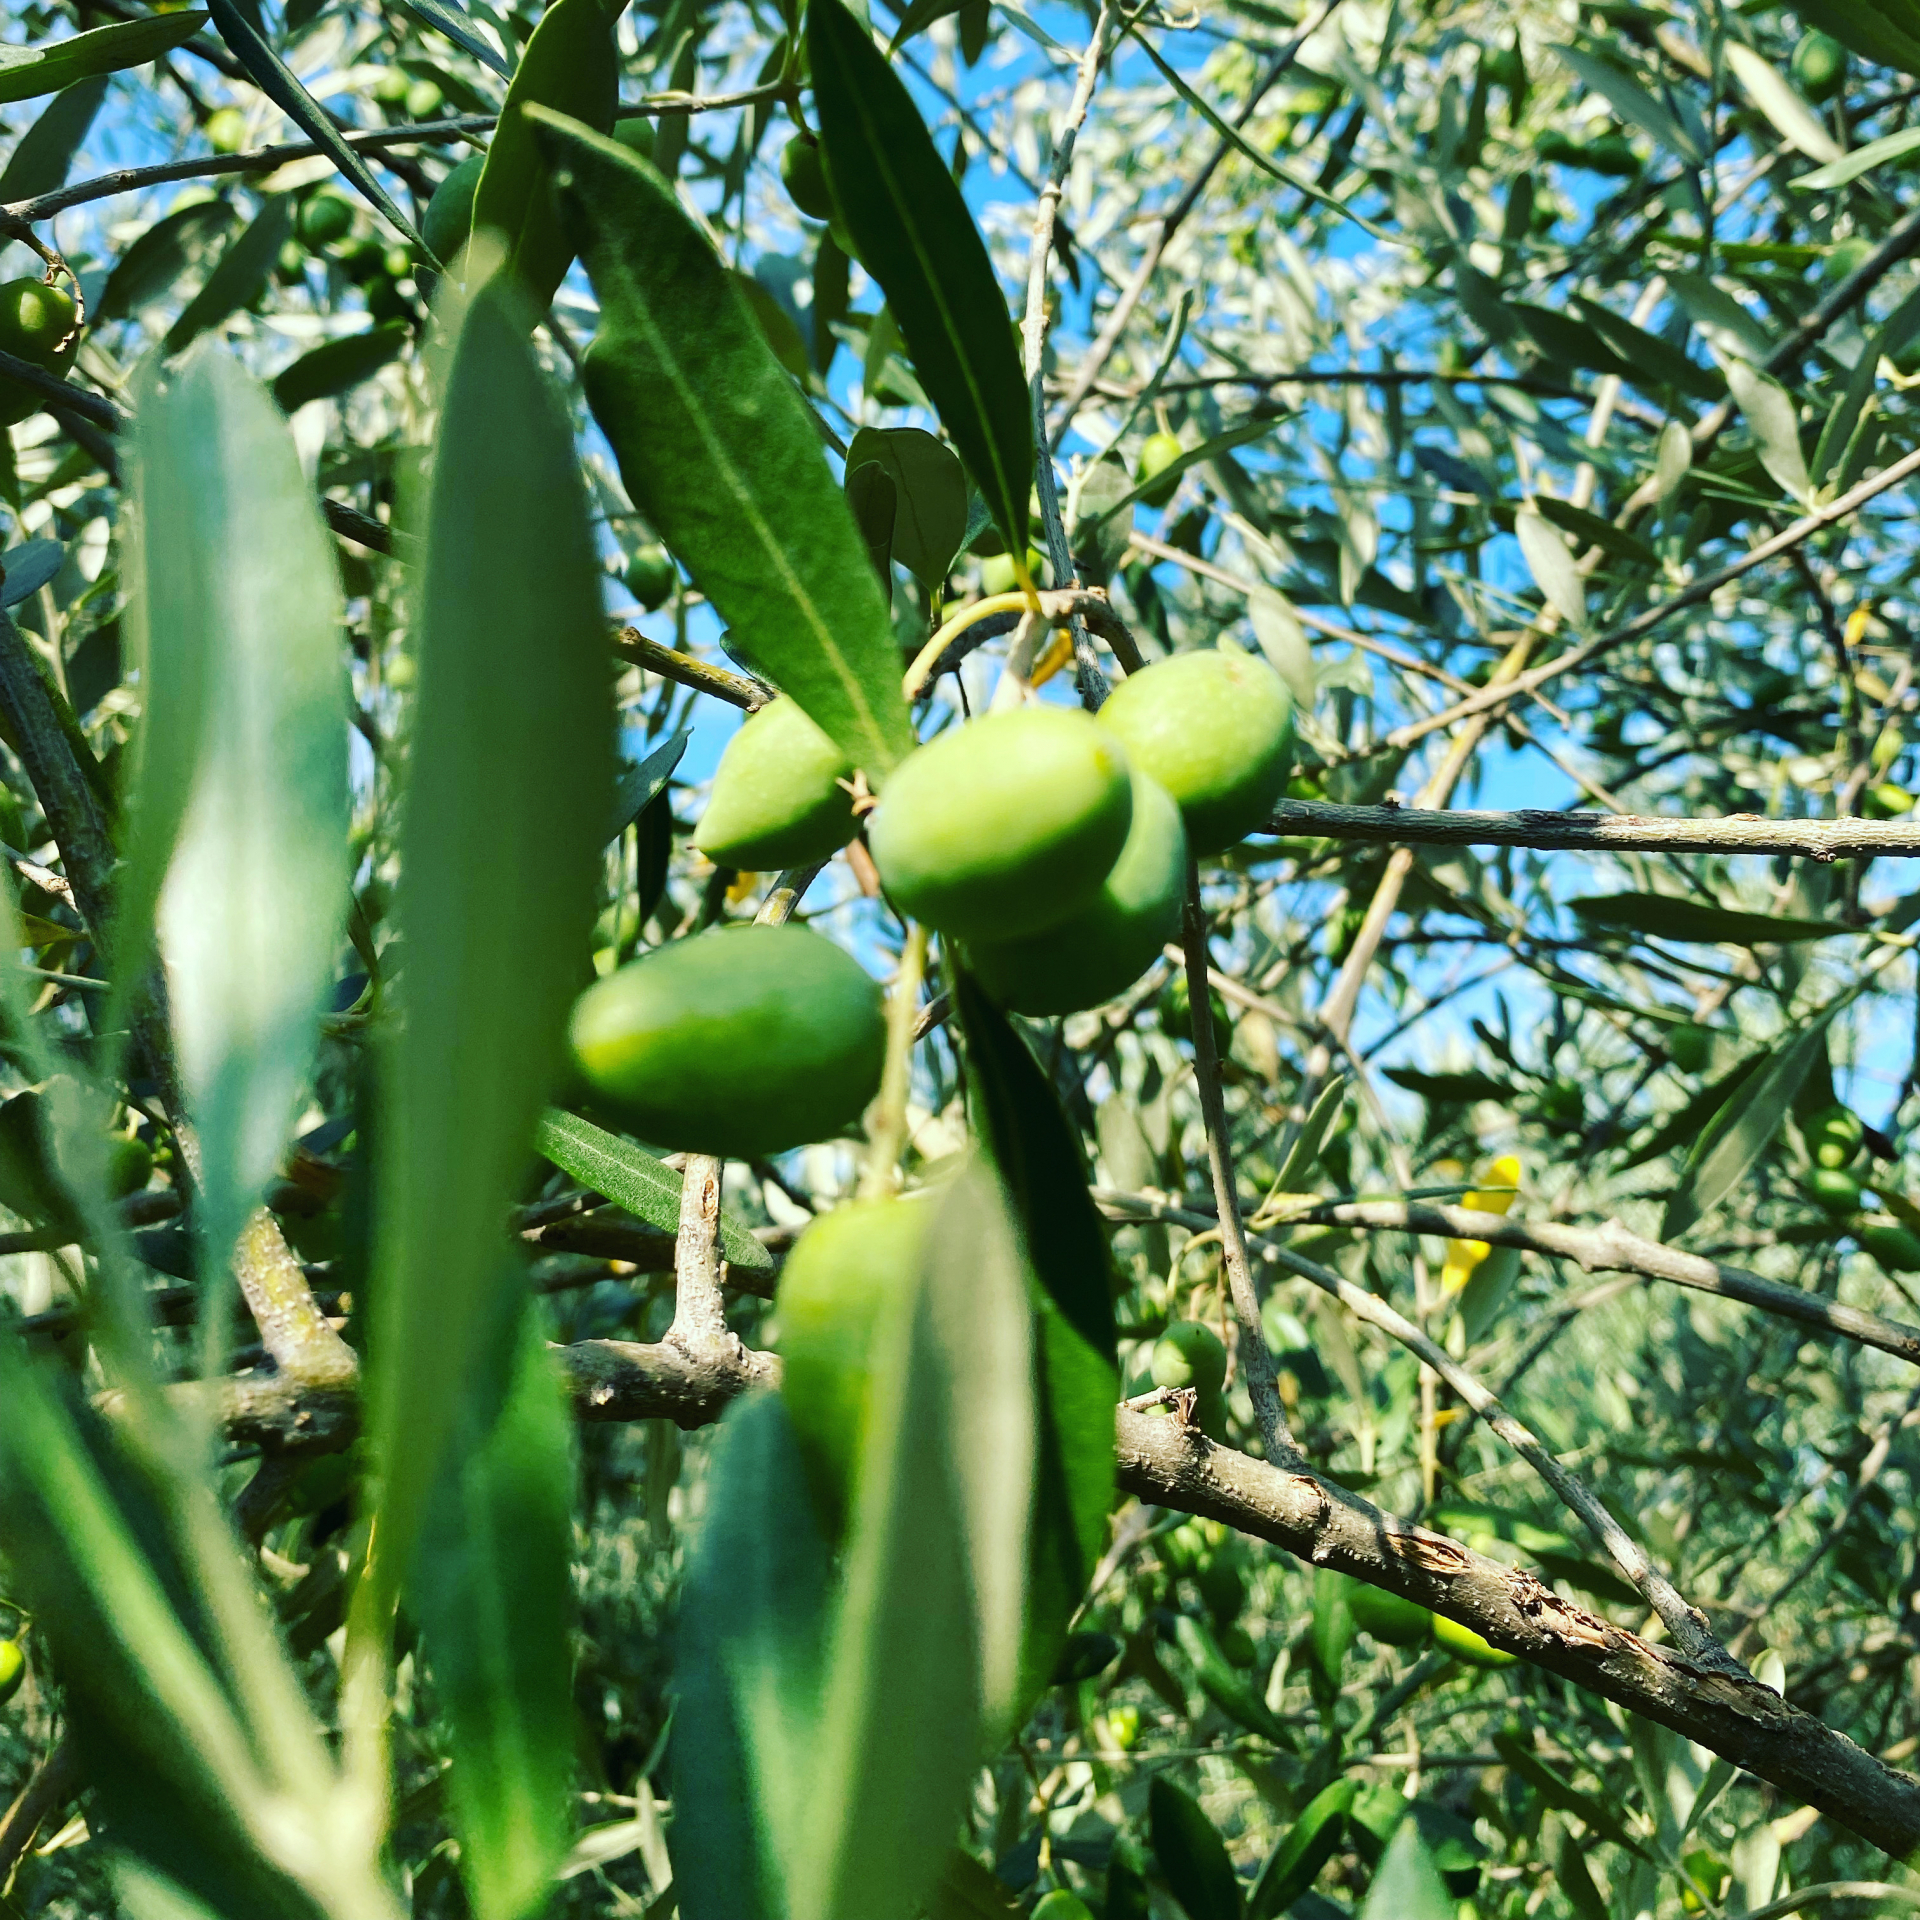 Verso maggiori tutele per gli olivicoltori spagnoli. Una strategia per vincere sul mercato